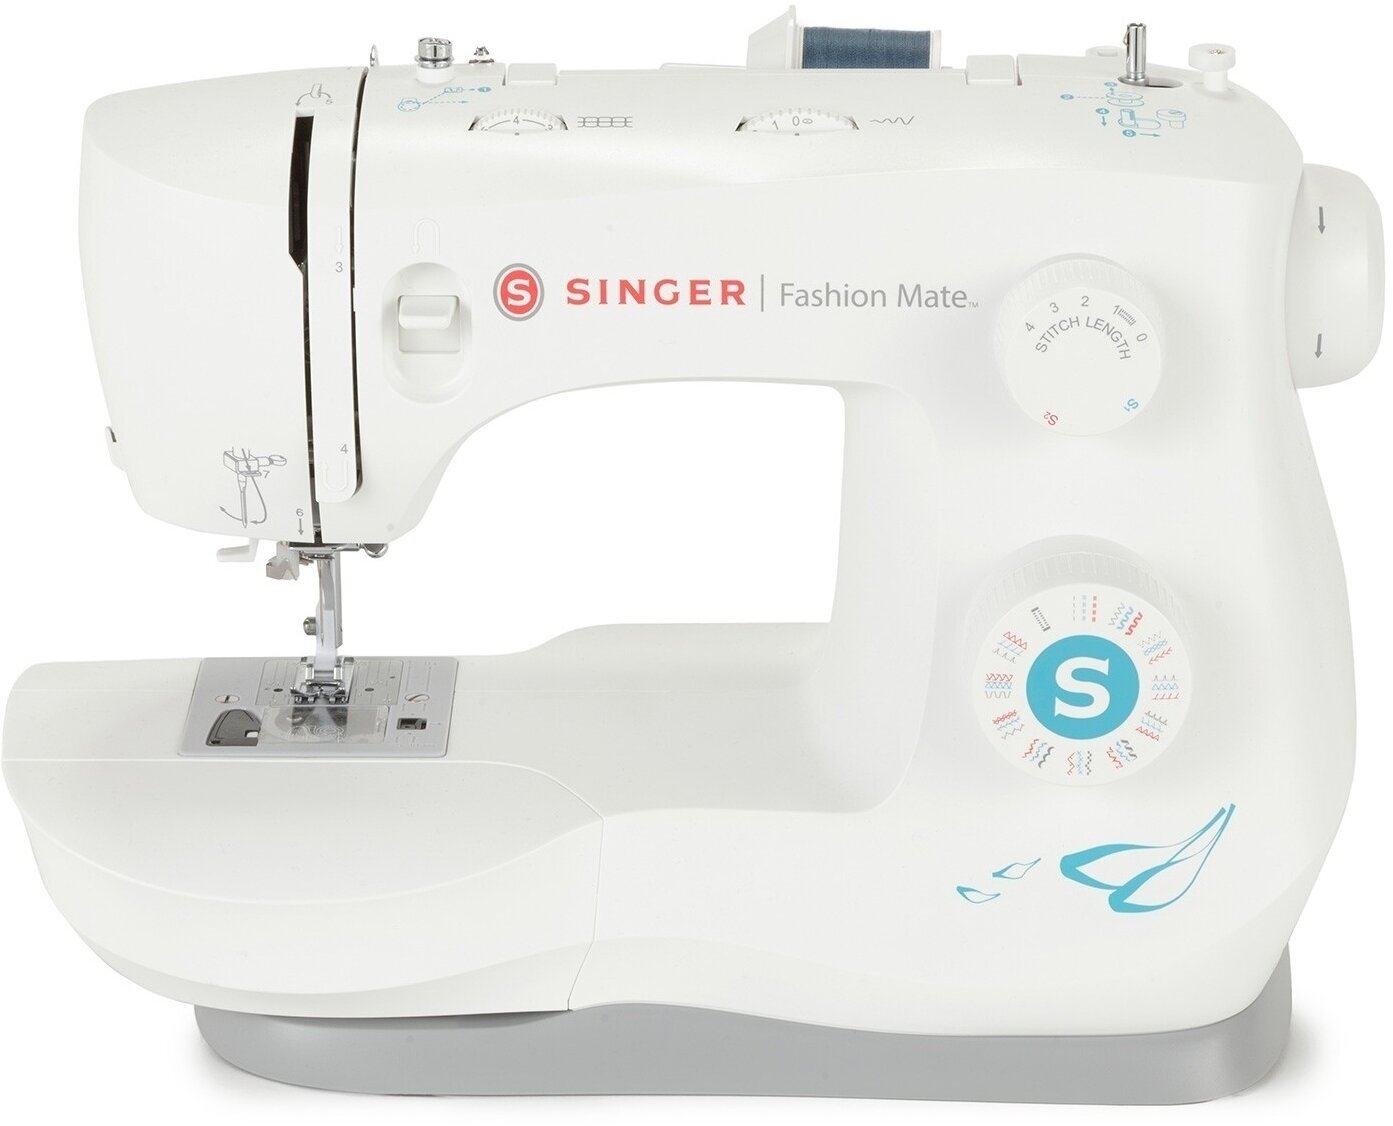 Sewing Machine Singer Fashion Mate 3342